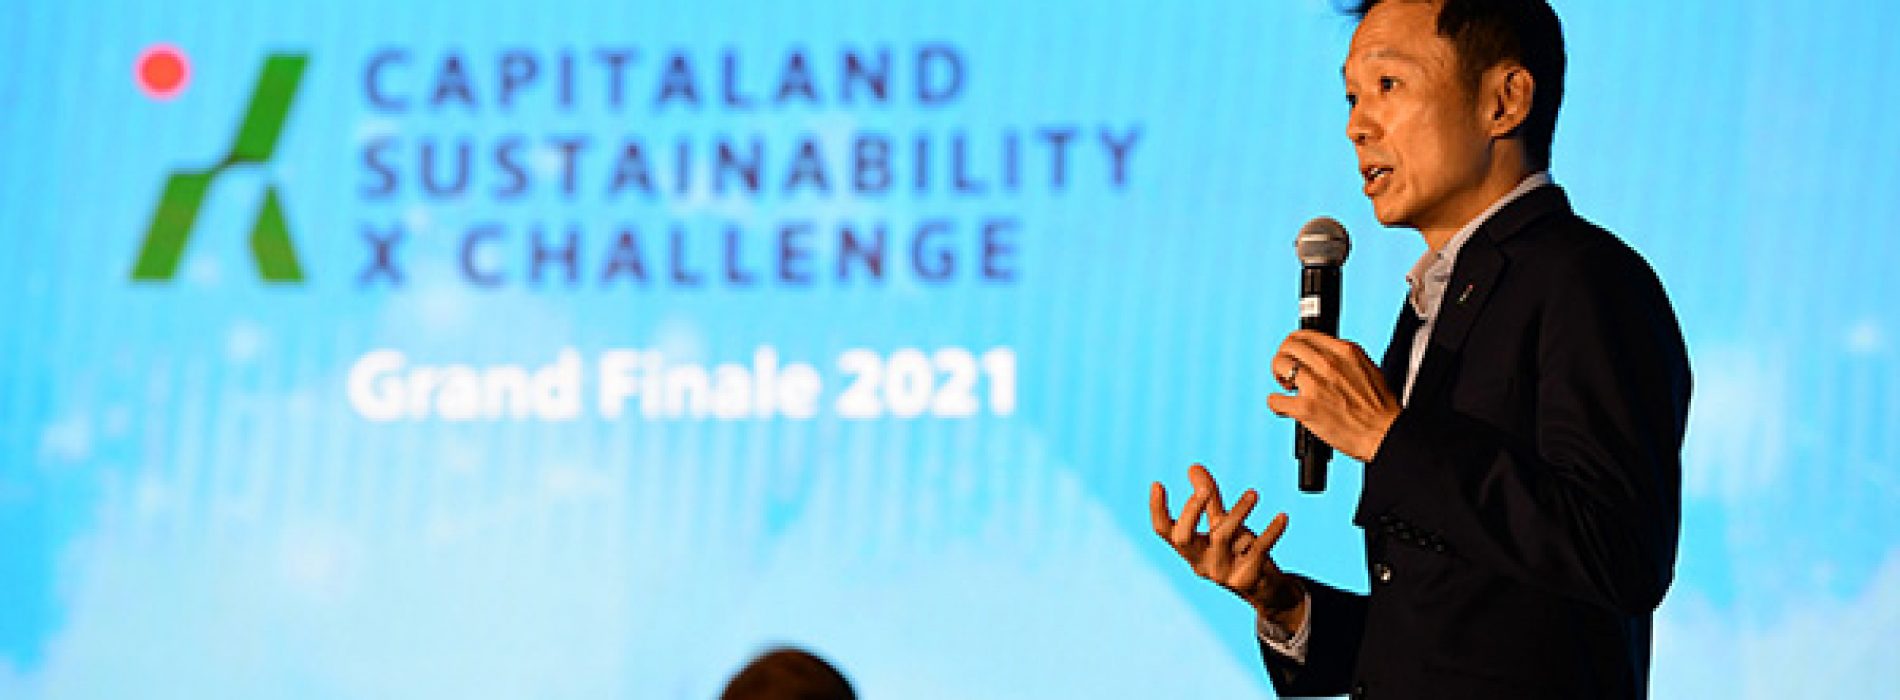 CapitaLand công bố Quỹ Đổi mới trị giá 50 triệu đô la Singapore và vinh danh nhà chiến thắng trong Thử thách bền vững CapitaLand X